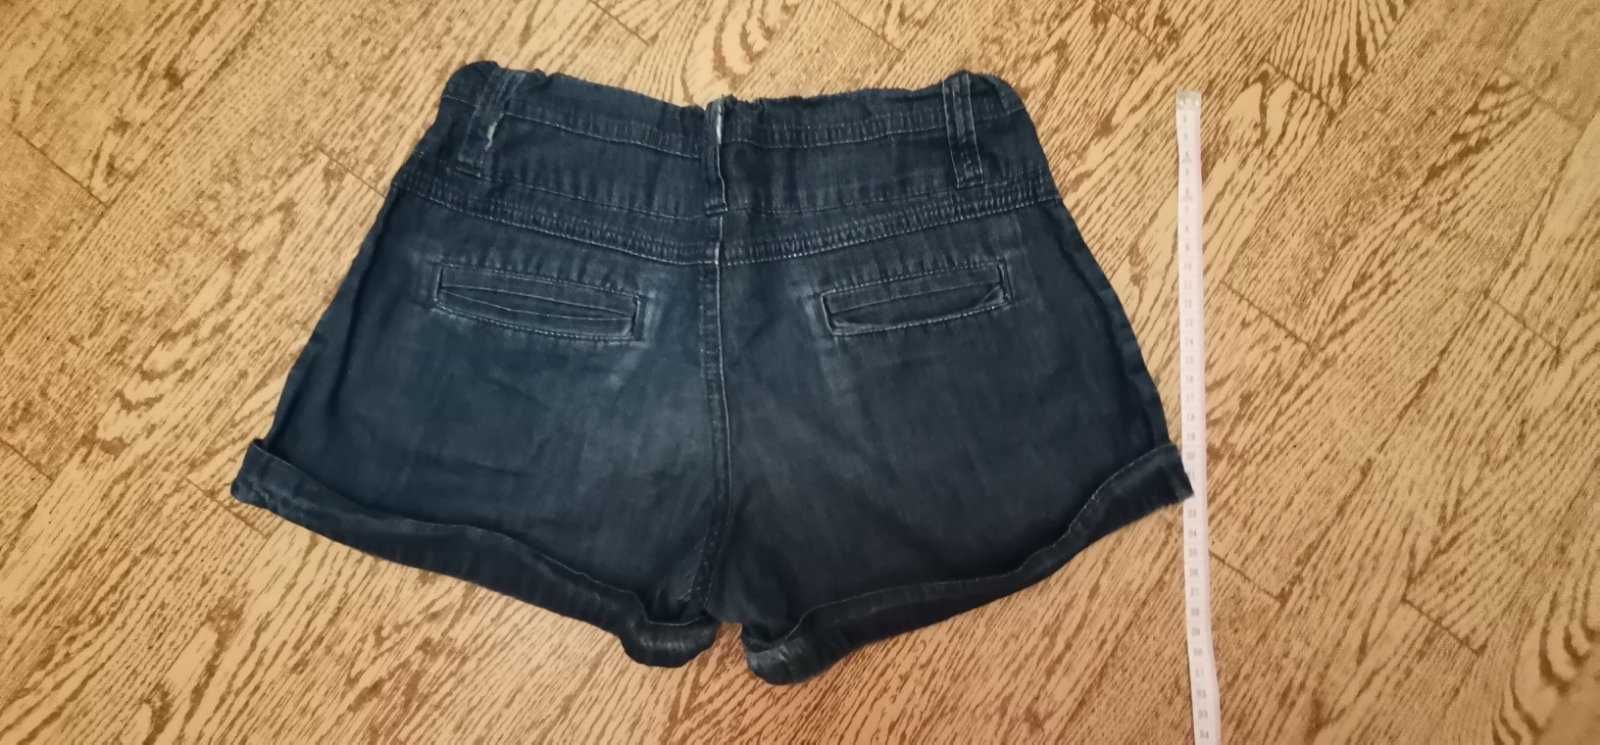 Літні короткі джинсові шорти (на 9-11 років)